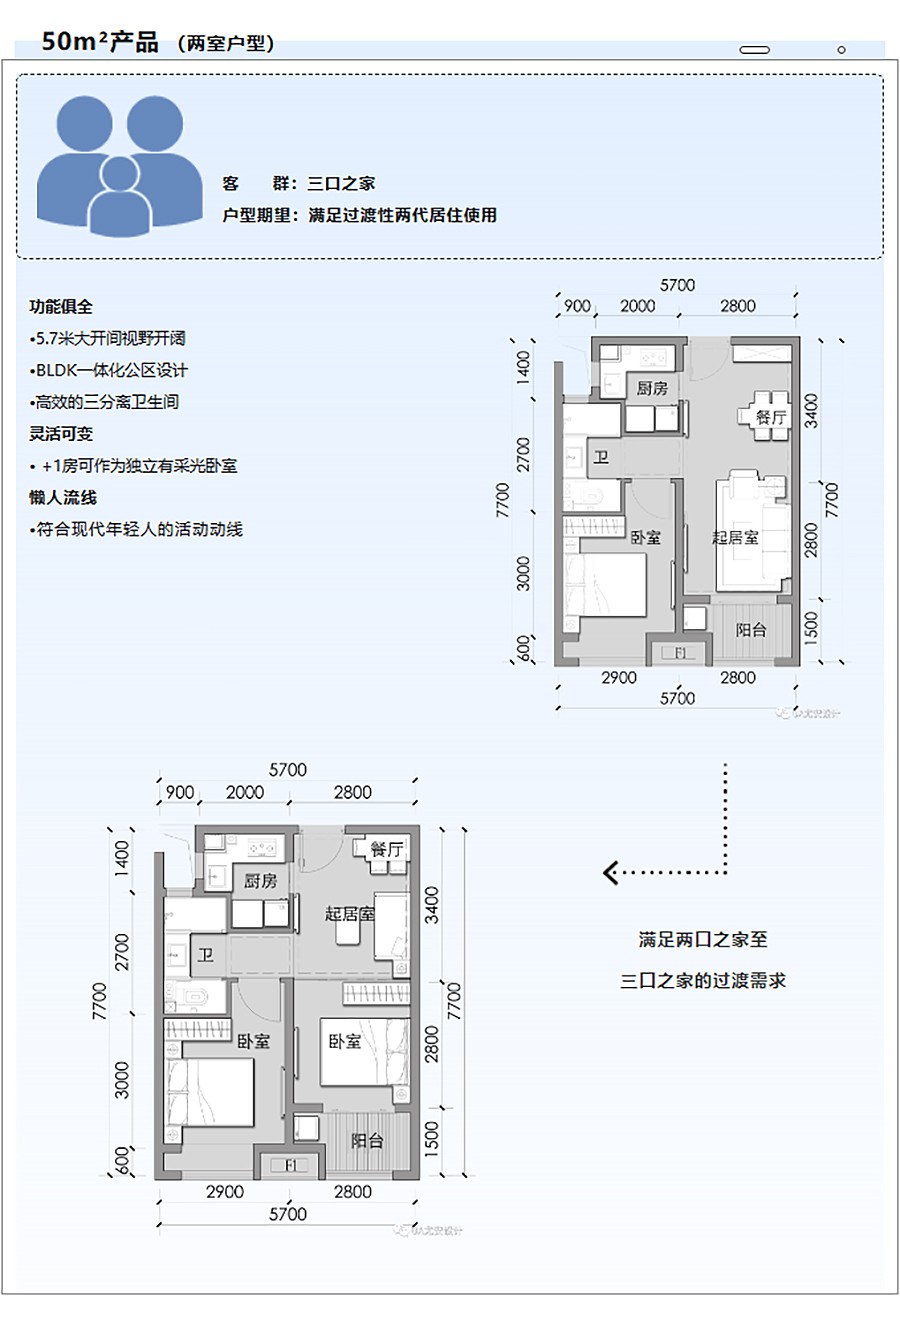 【保租房专题】张江国际医学园区-_-优质舒适的租赁社区-3_05.jpg